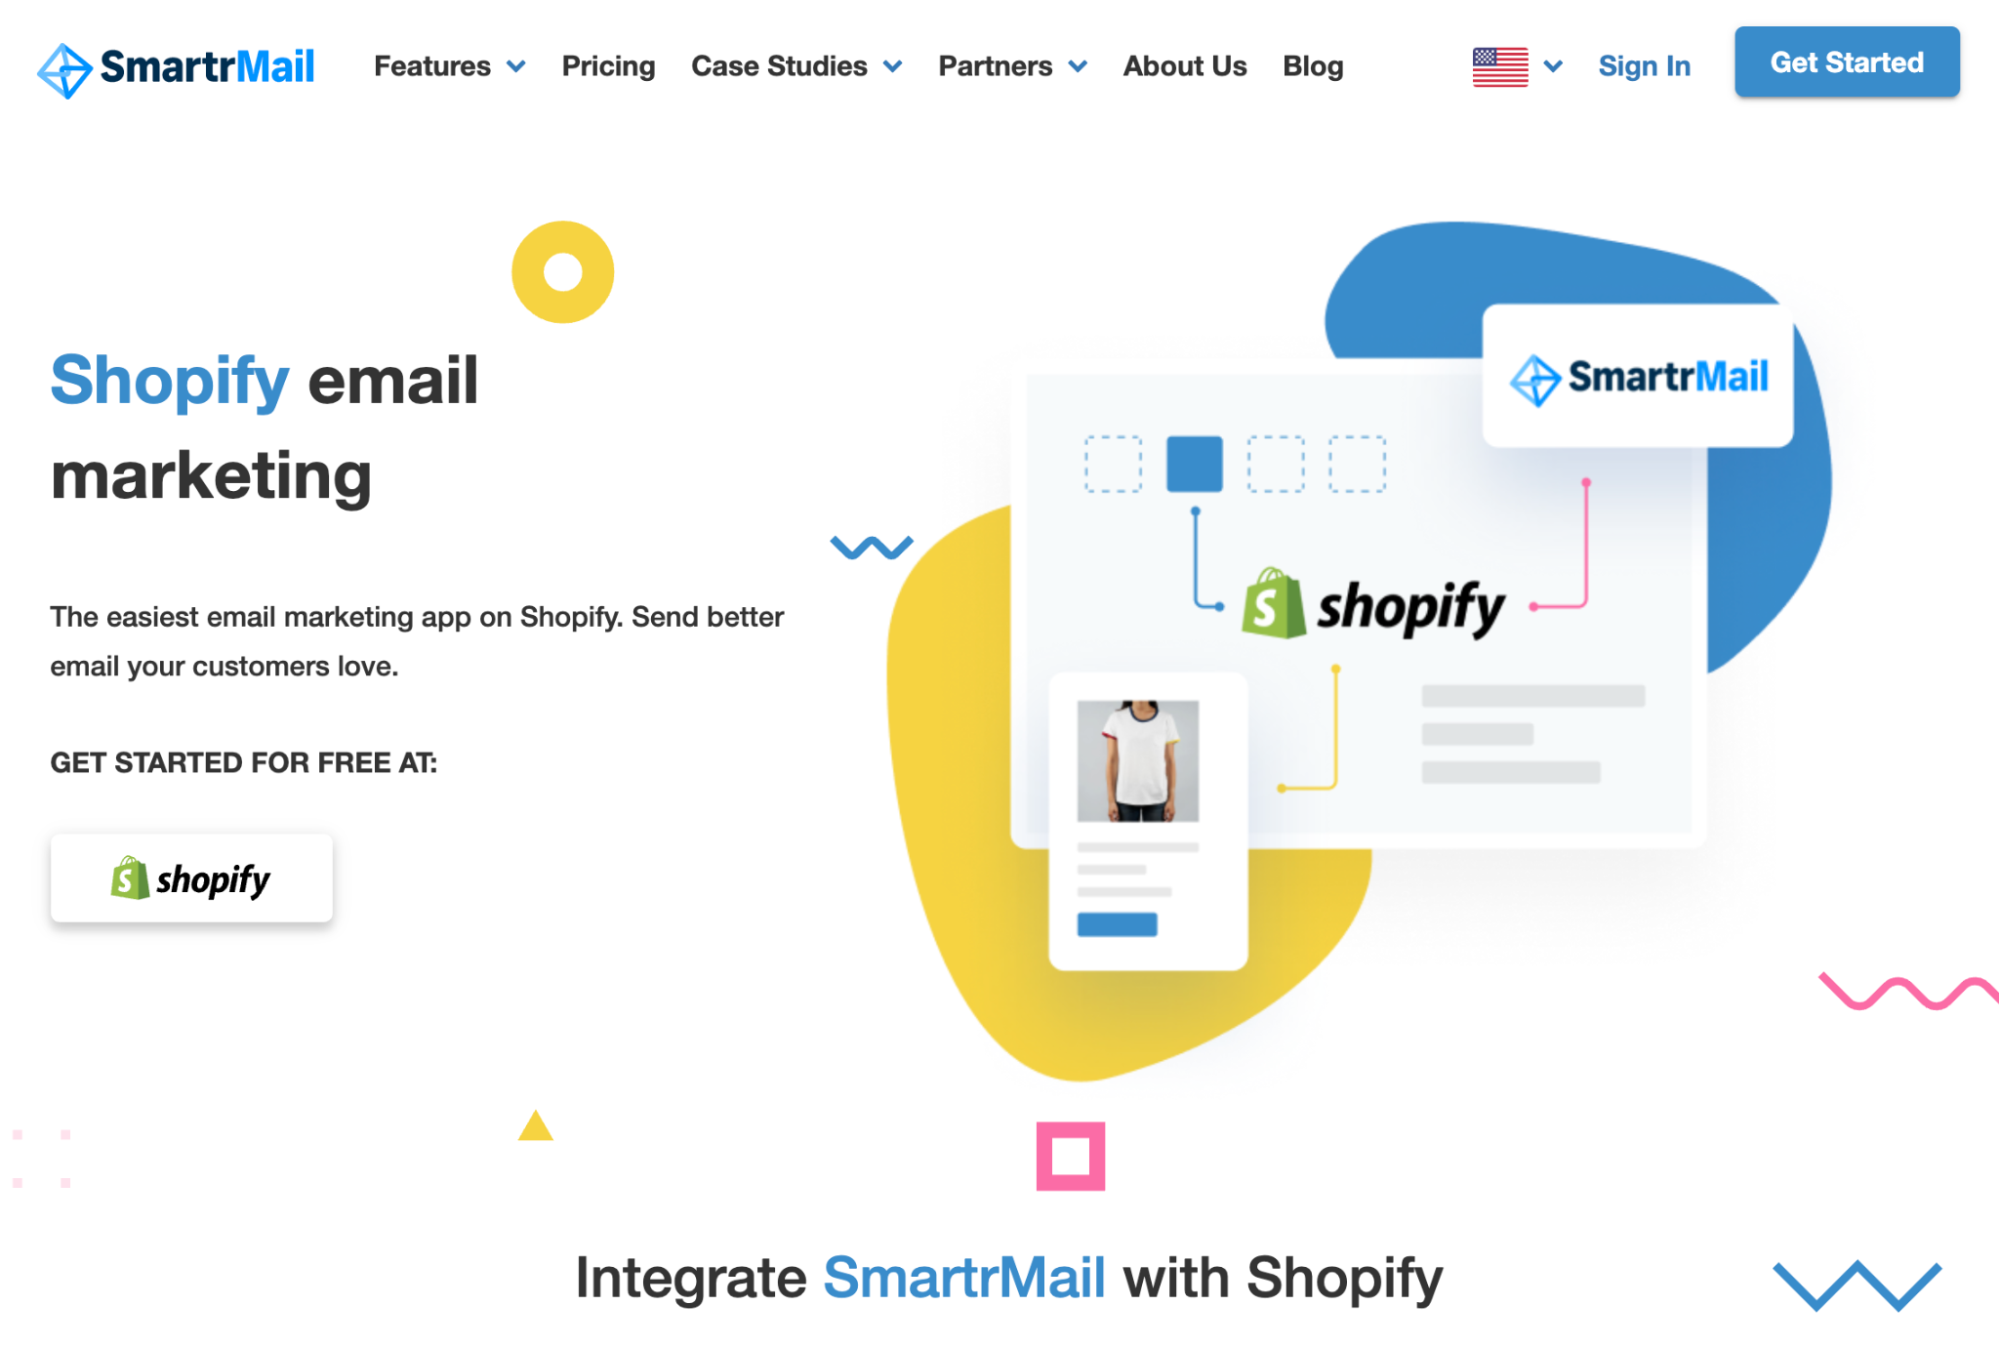 smartrmail 电子邮件营销服务提供商